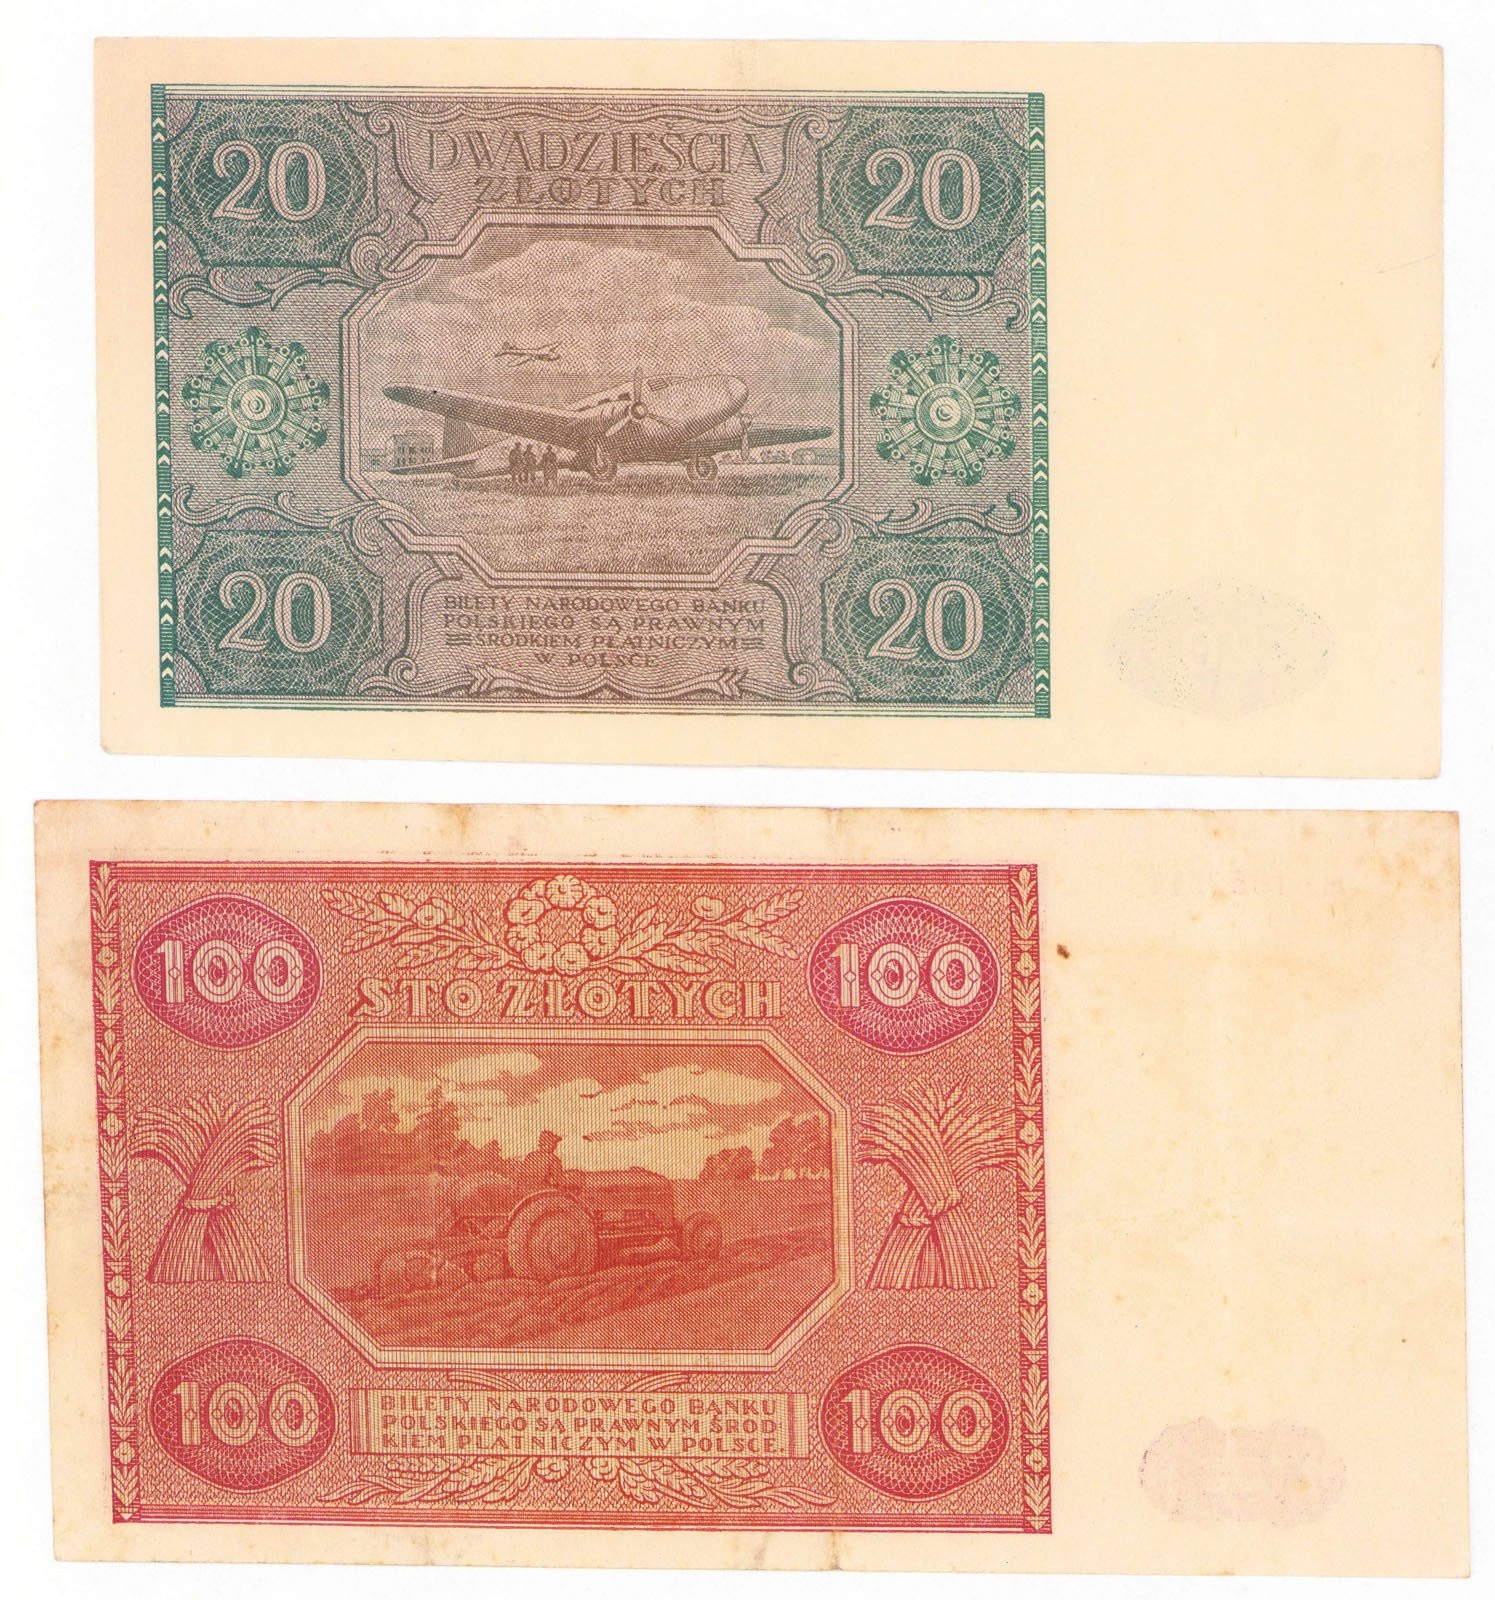 20 złotych 1946 seria C i 100 złotych 1946 seria Mz, zestaw 2 sztuk